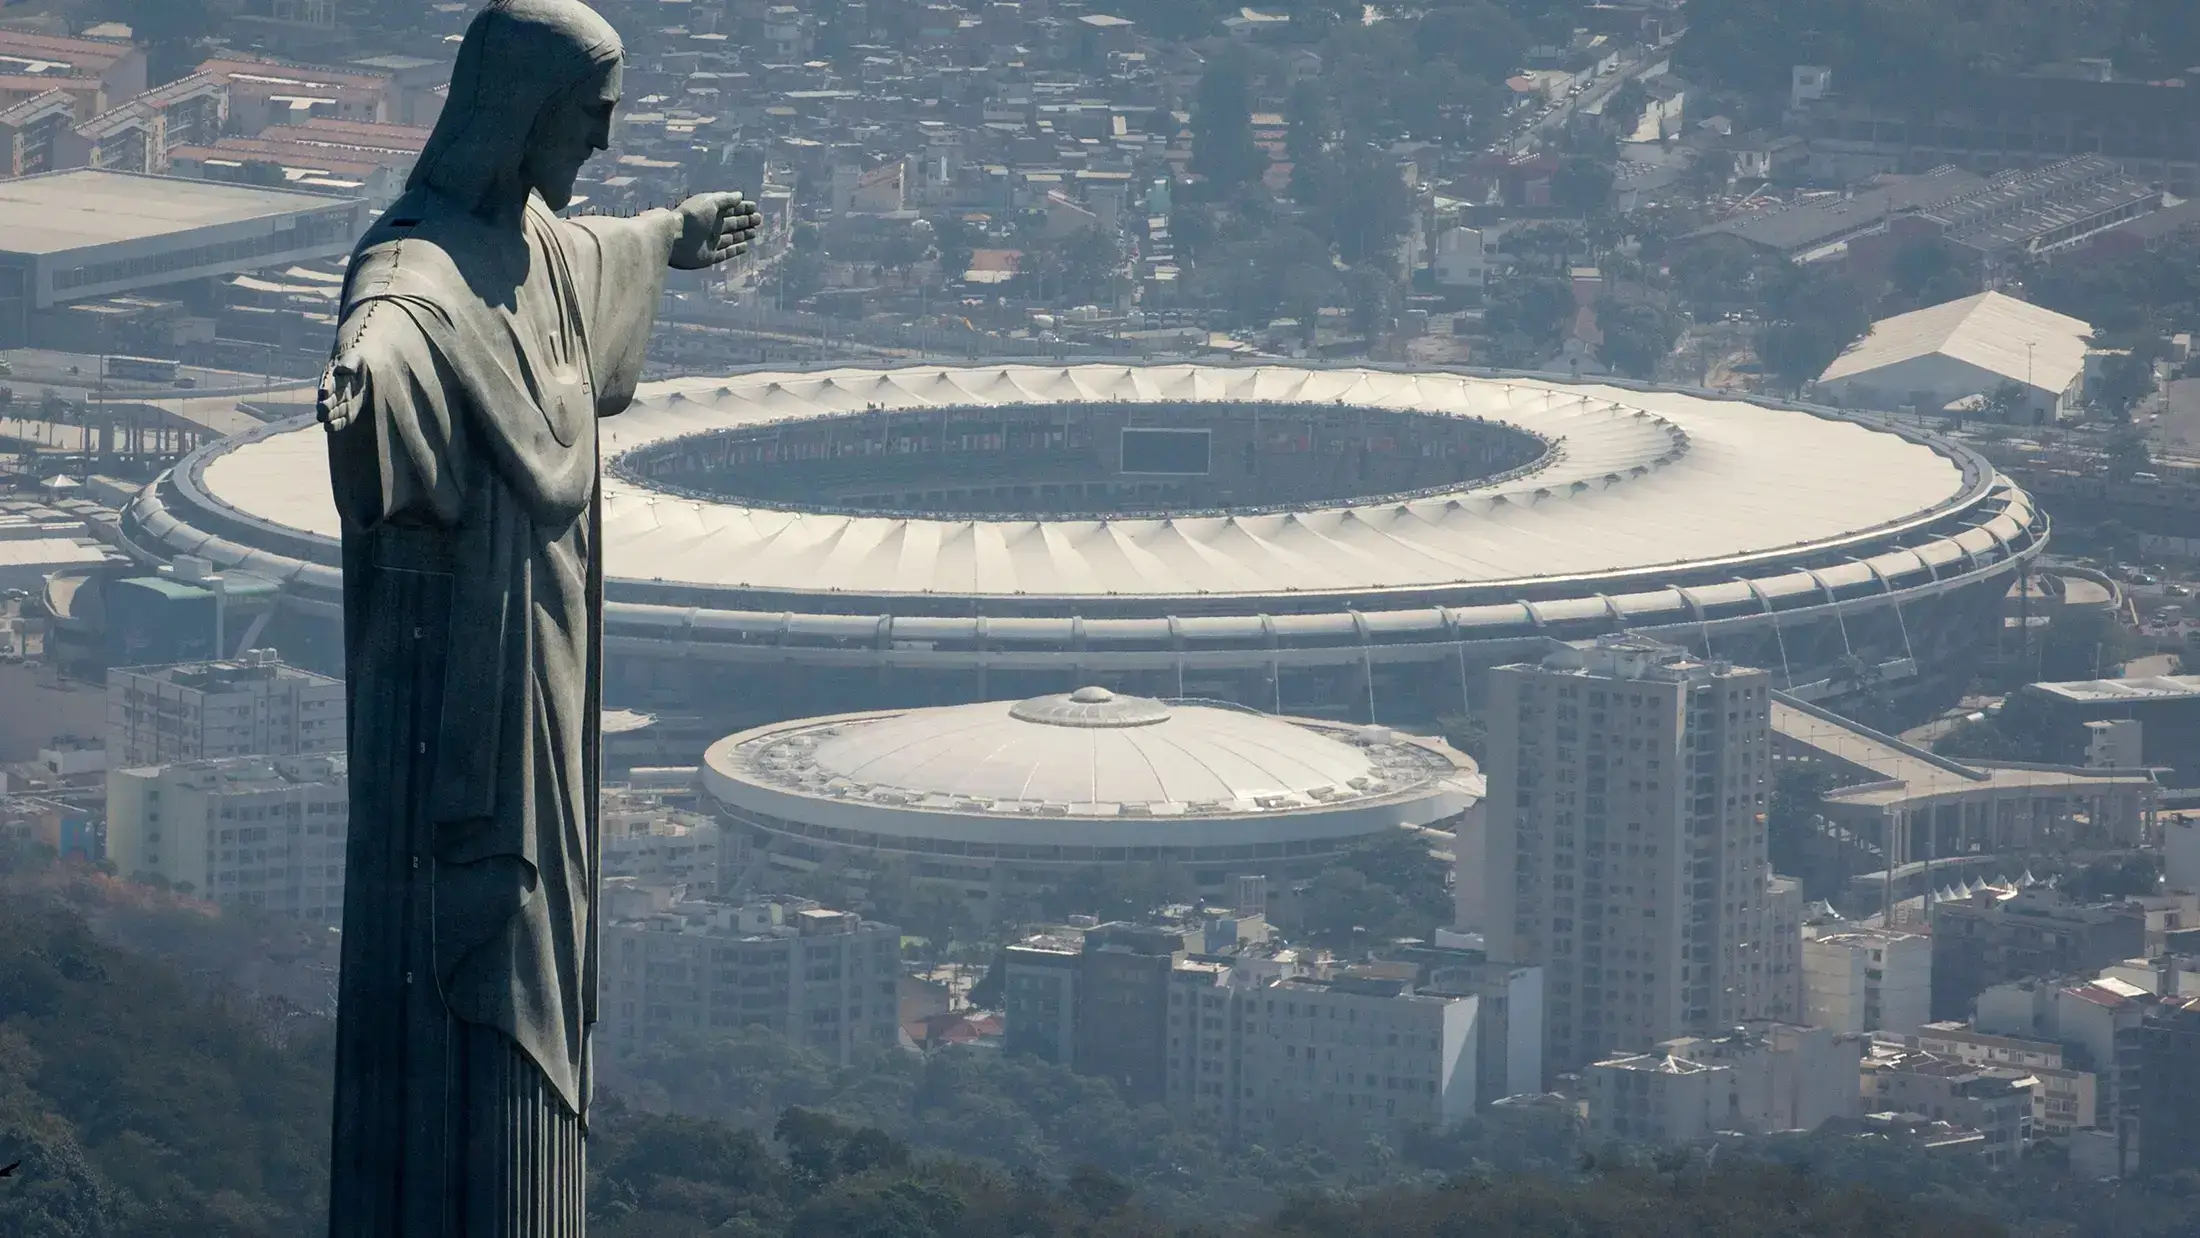 Final Copa Libertadores 2023